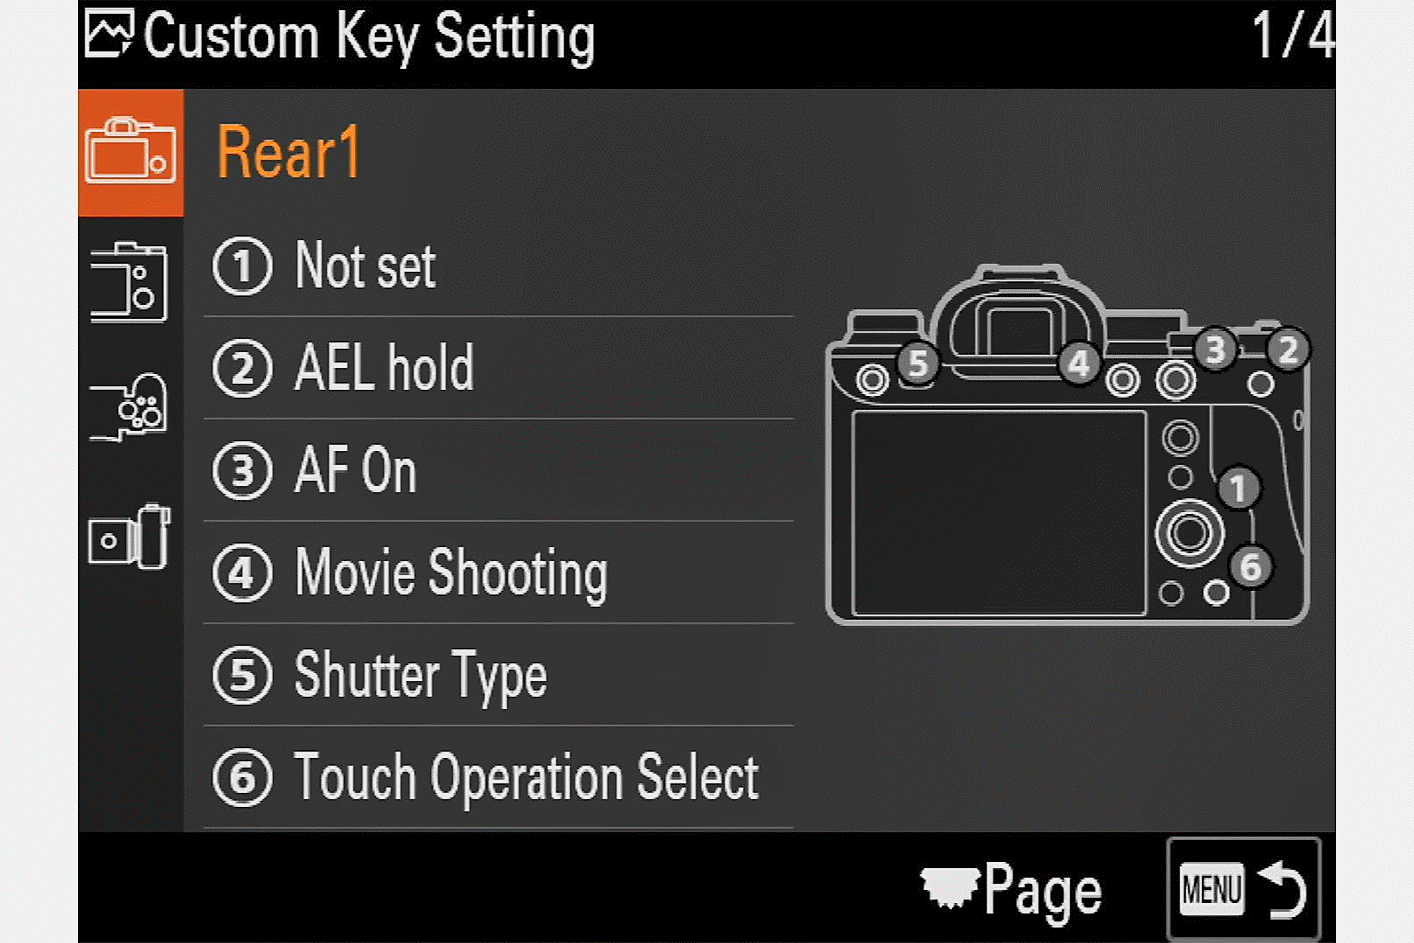 "Custom Key Setting" menu